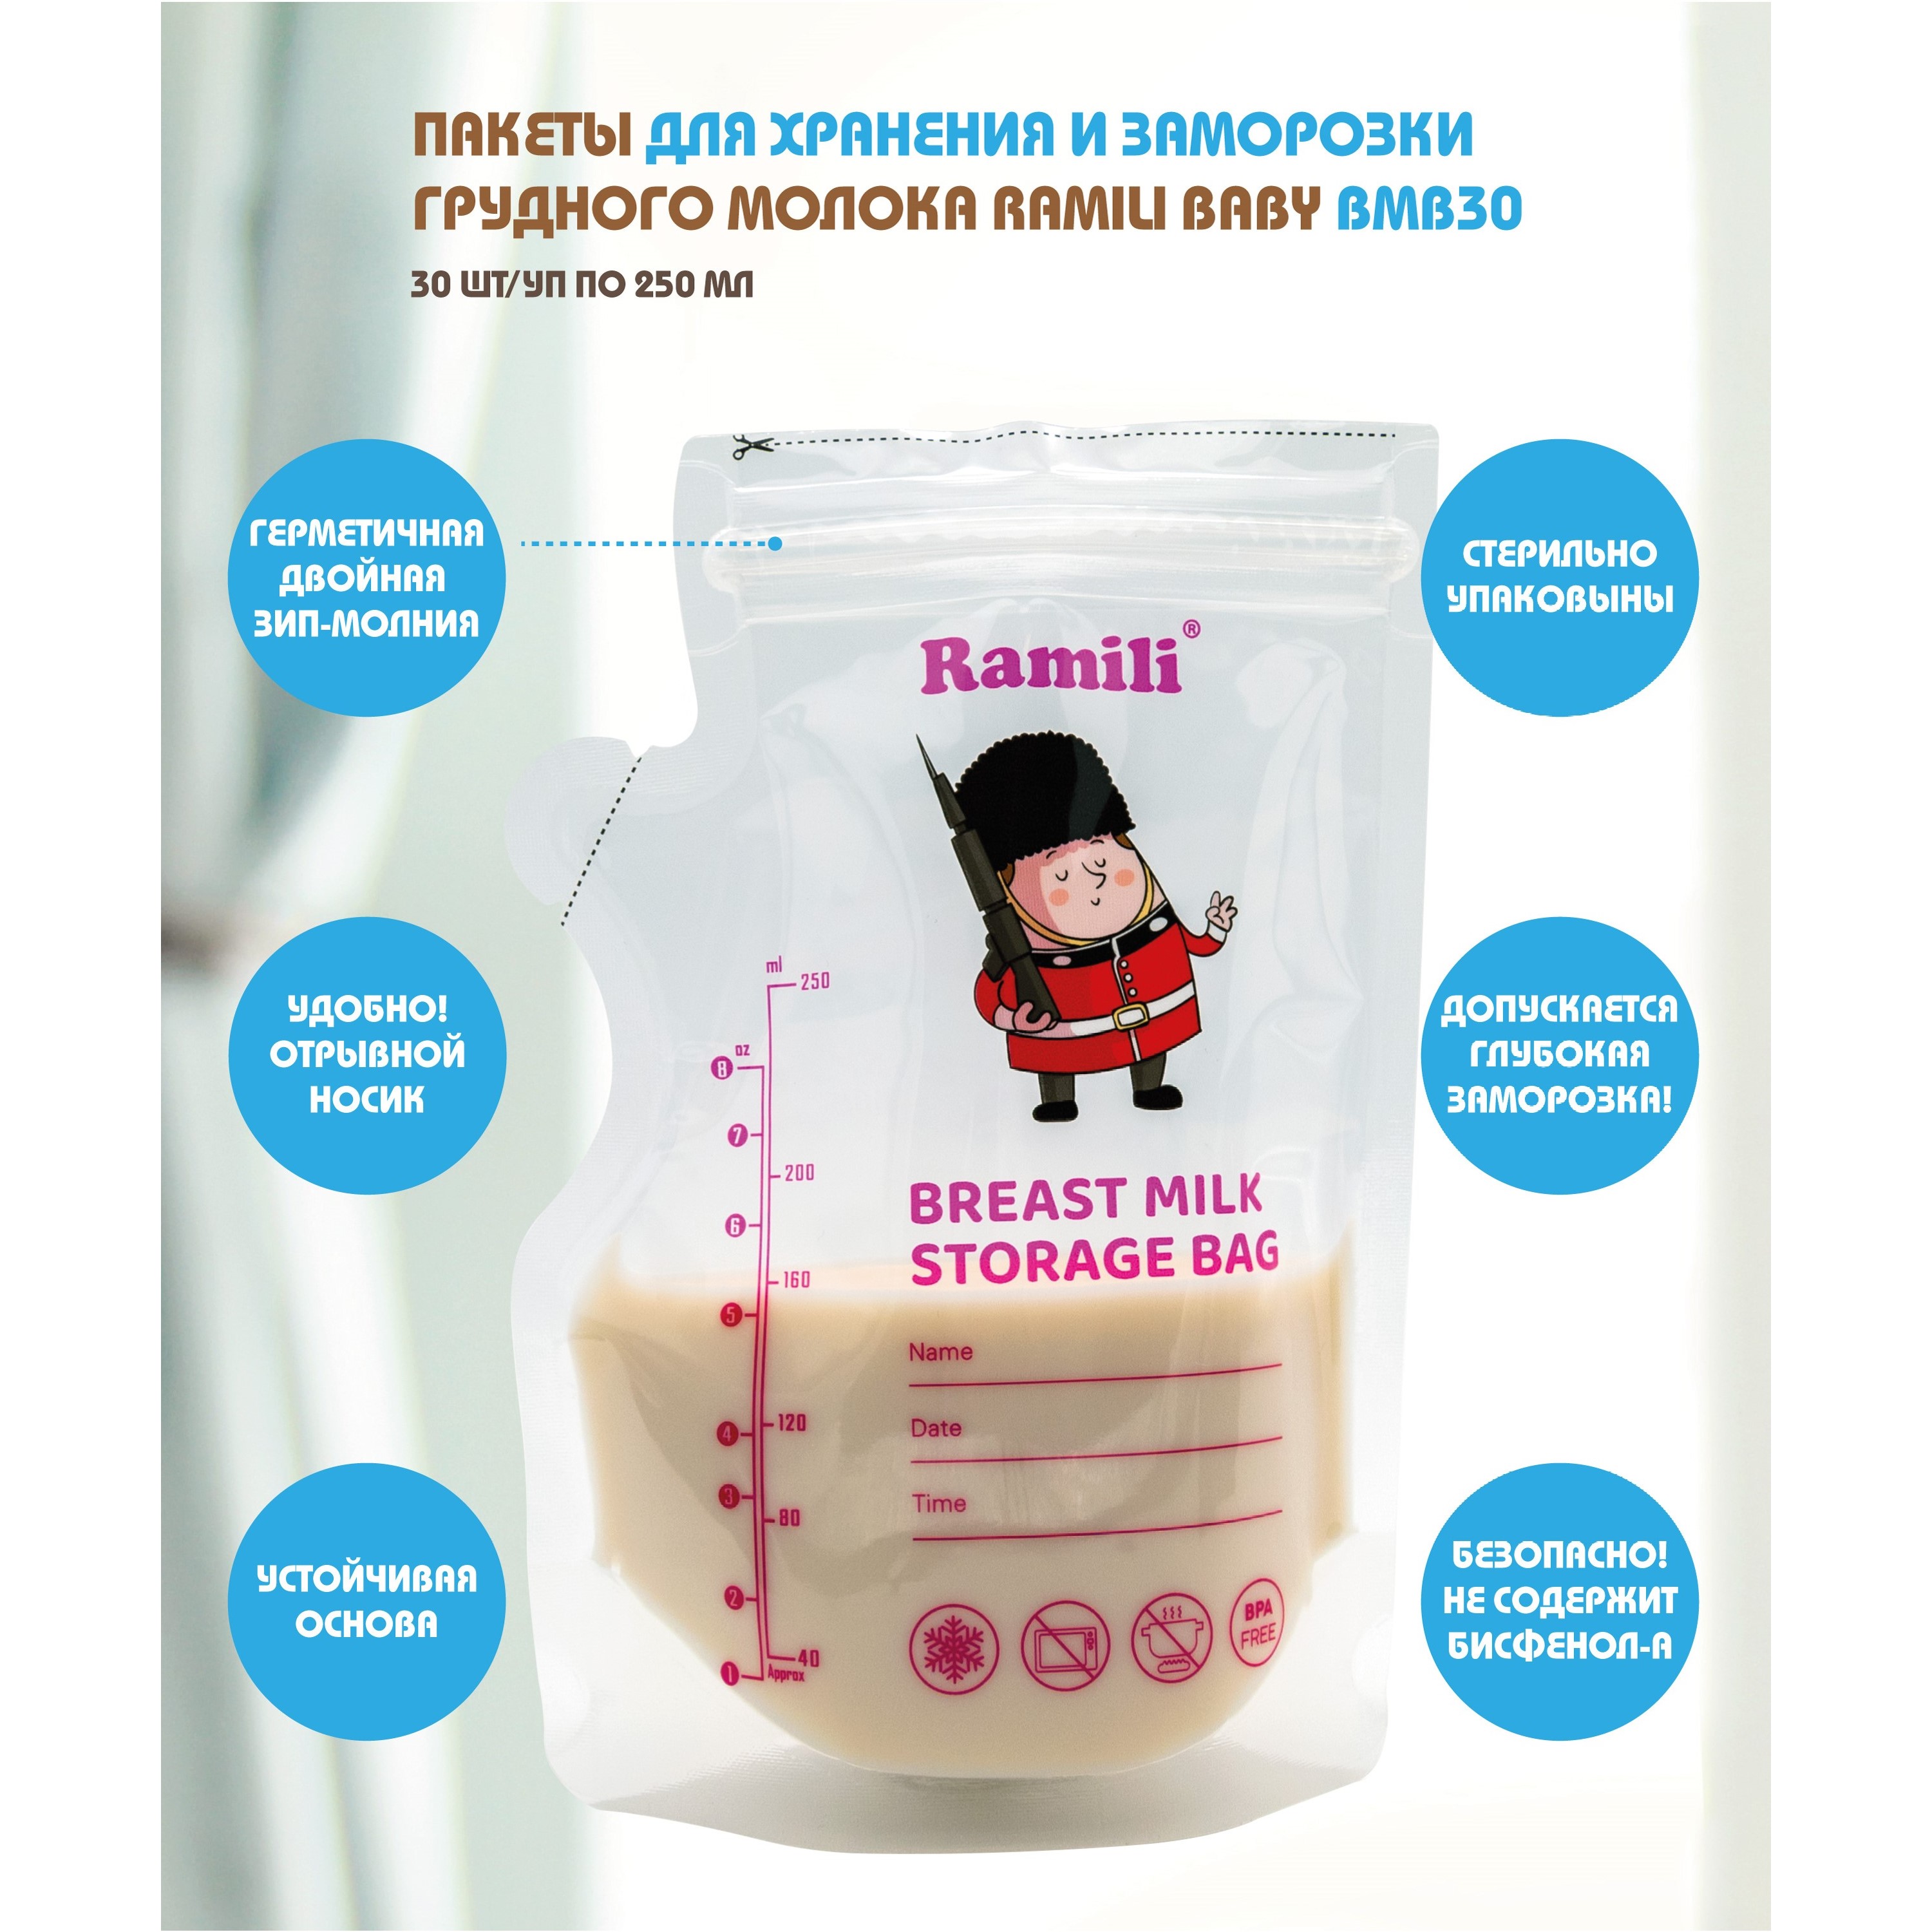 Пакеты для хранения и заморозки грудного молока Ramili Baby BMB30 ardo пакеты для хранения и замораживания грудного молока easy store 25 шт